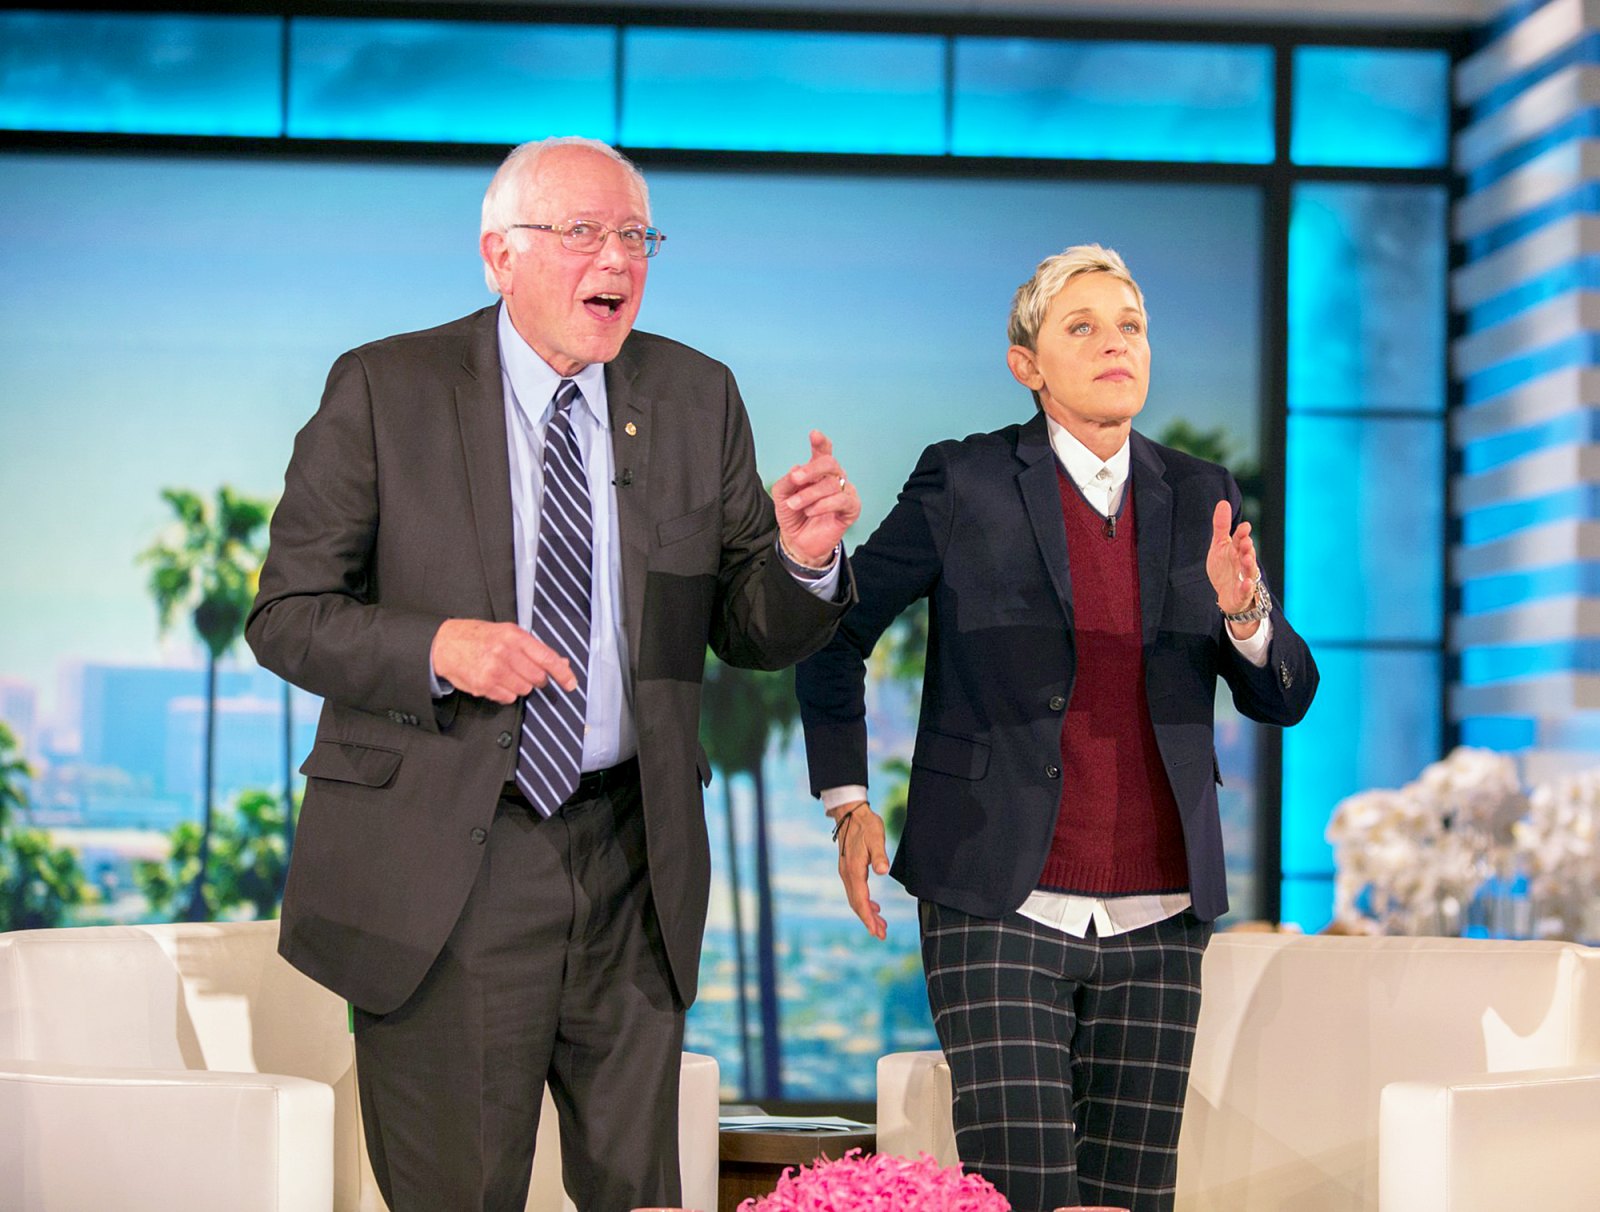 Bernie Sanders and Ellen DeGeneres